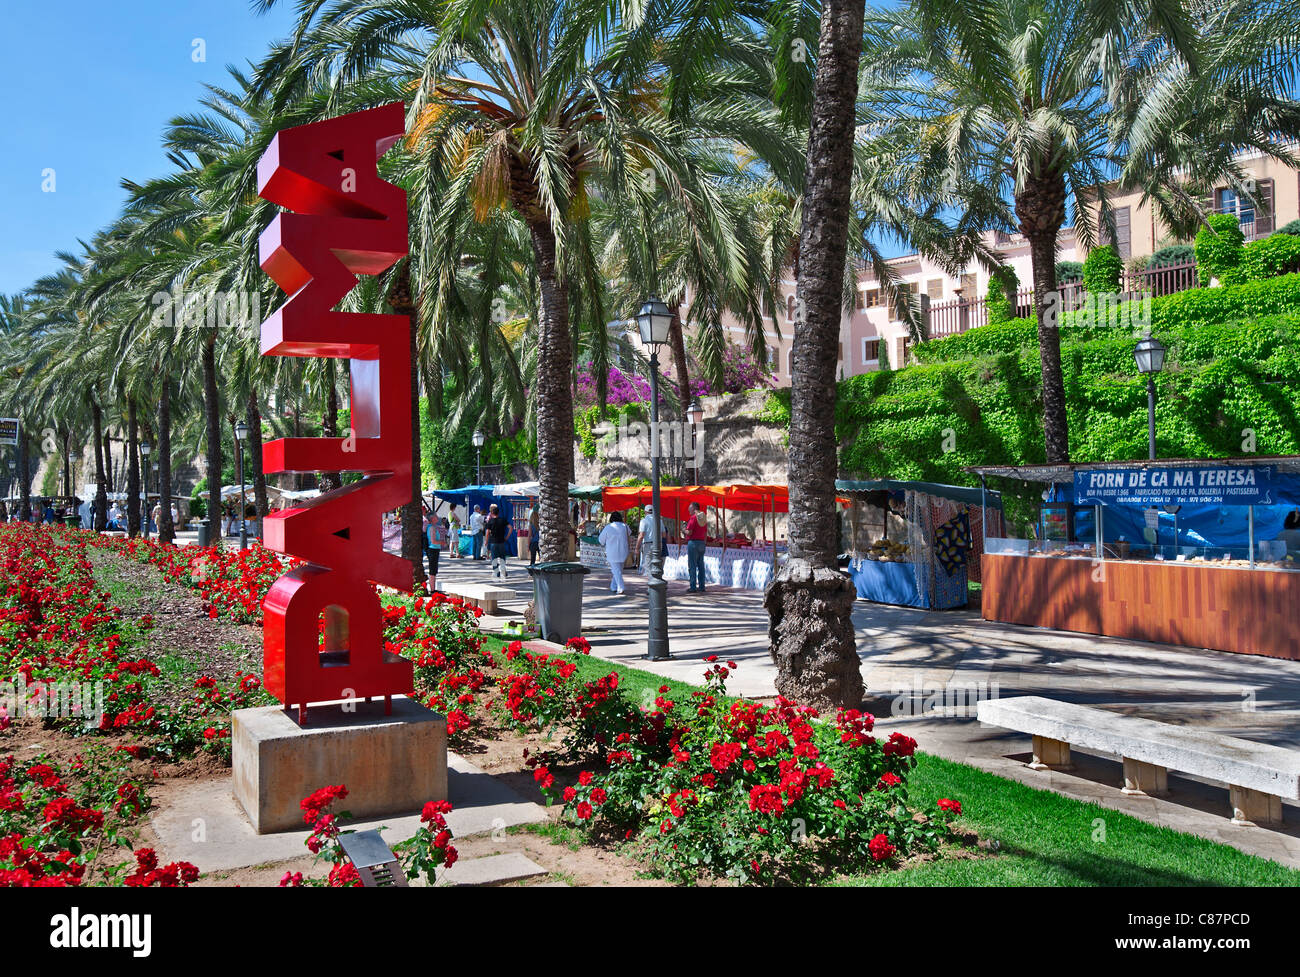 El mercado de palma con rojo 'palma' escultura vertical signo en